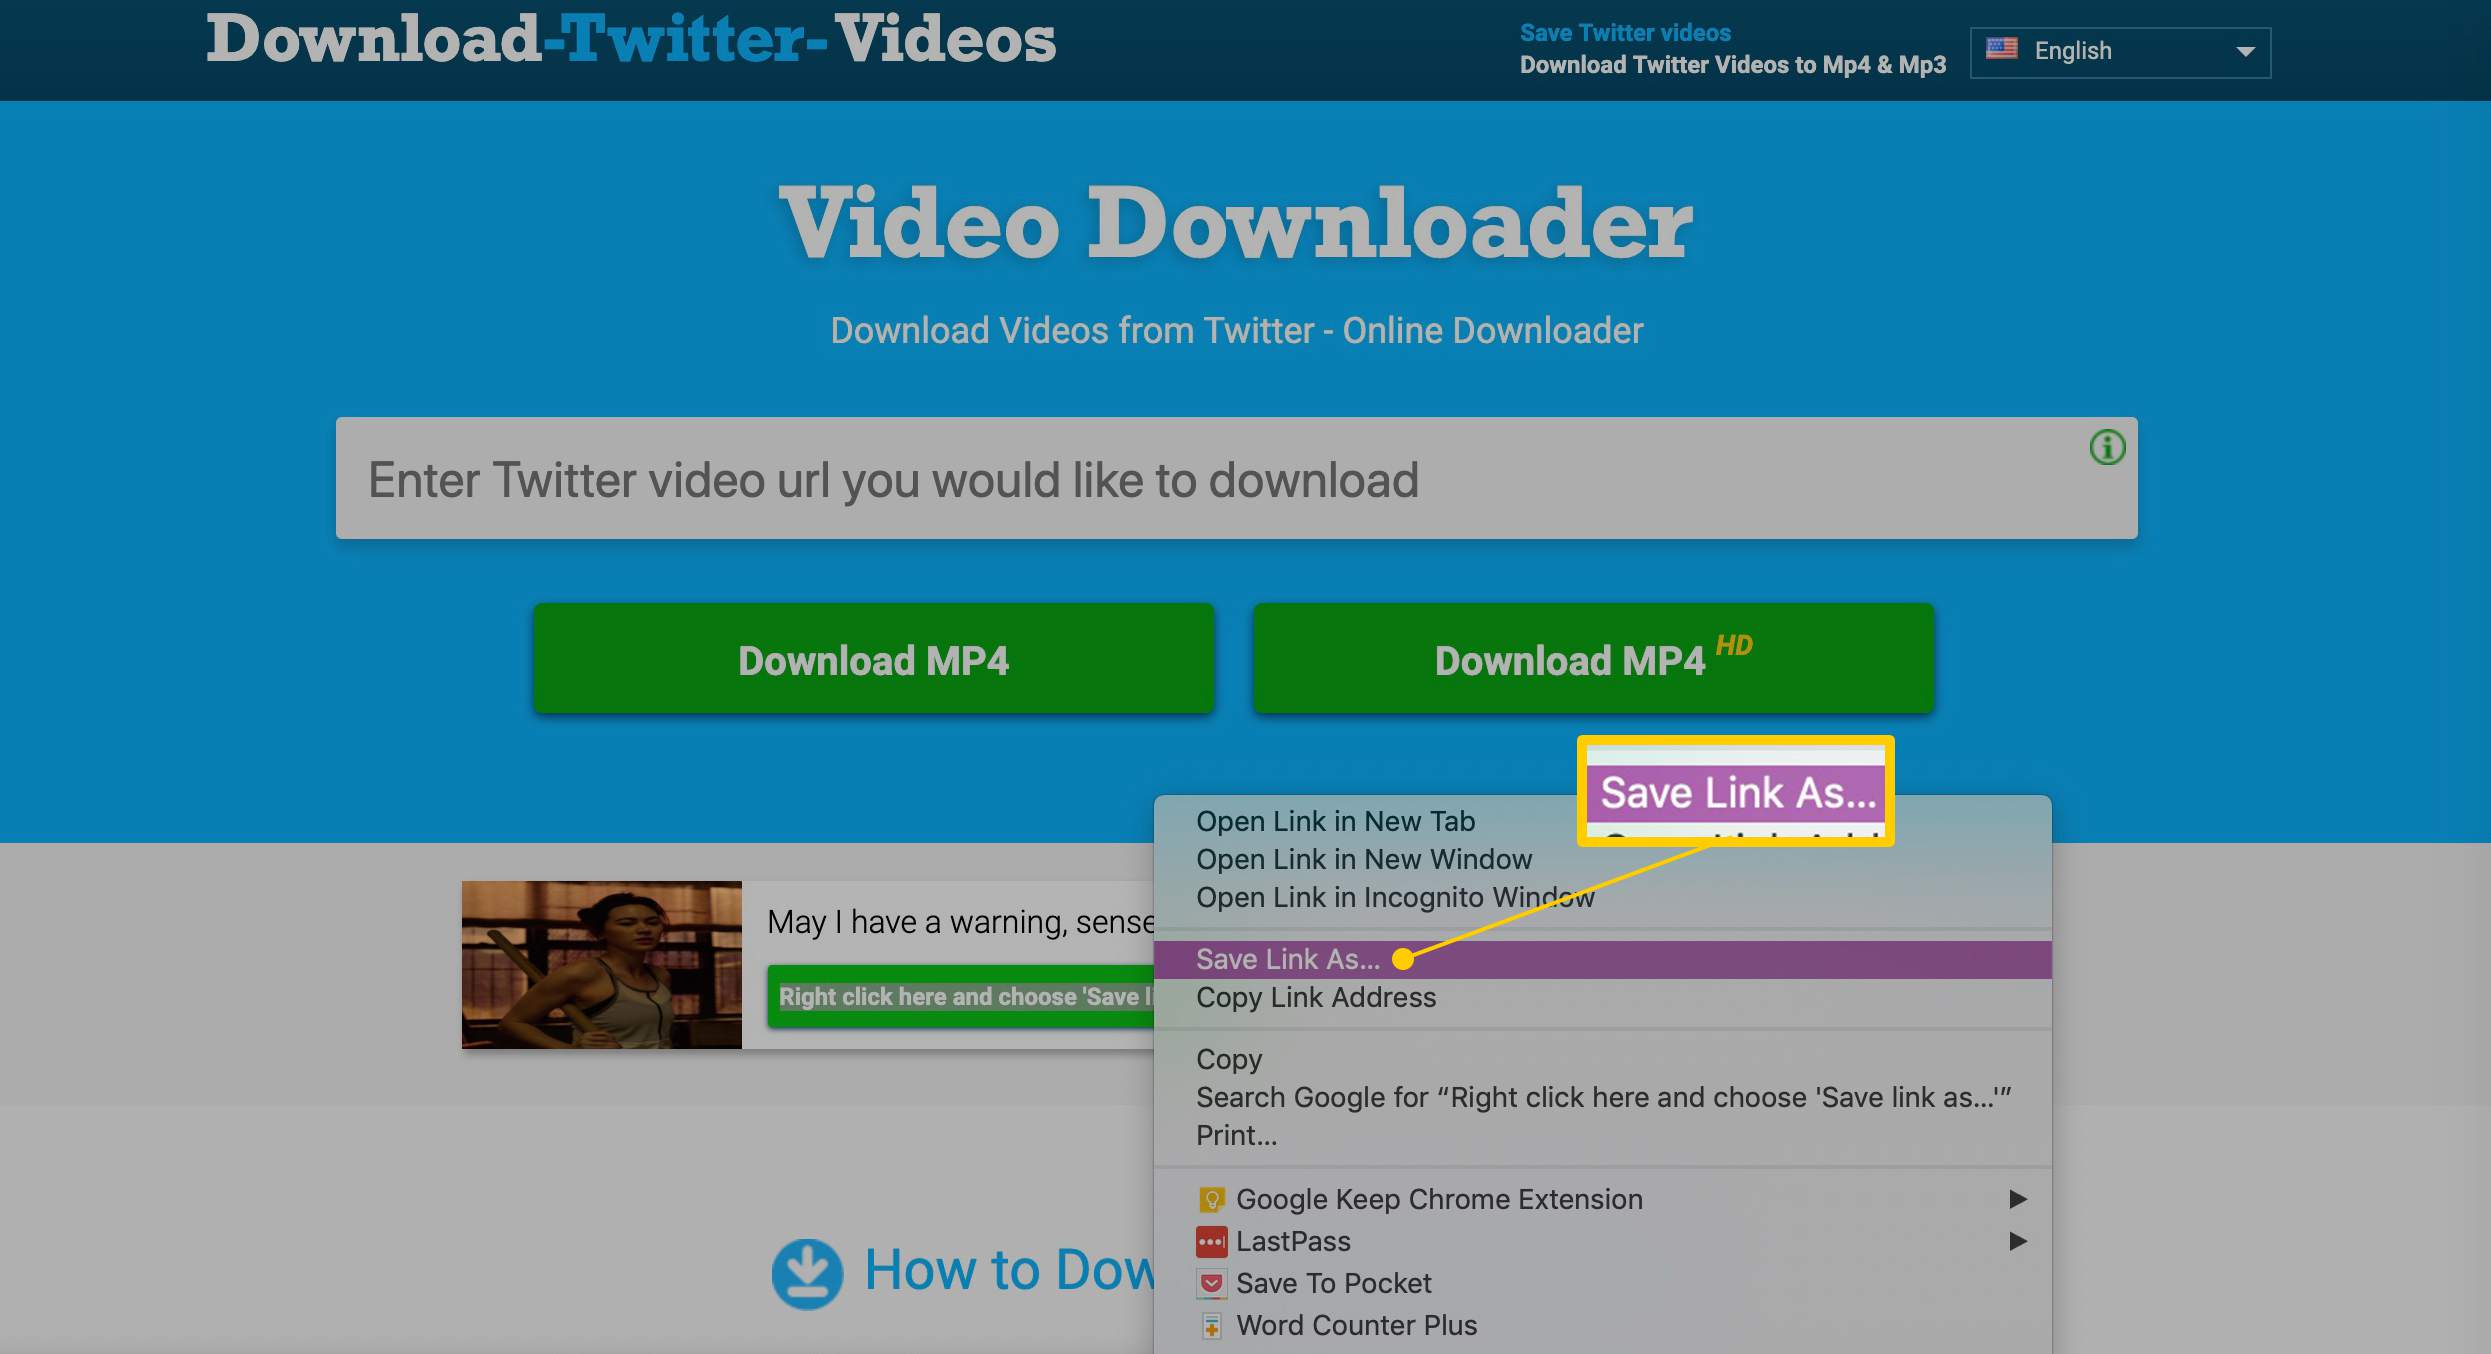 Spara länk som menyalternativ på Video Downloader-sidan